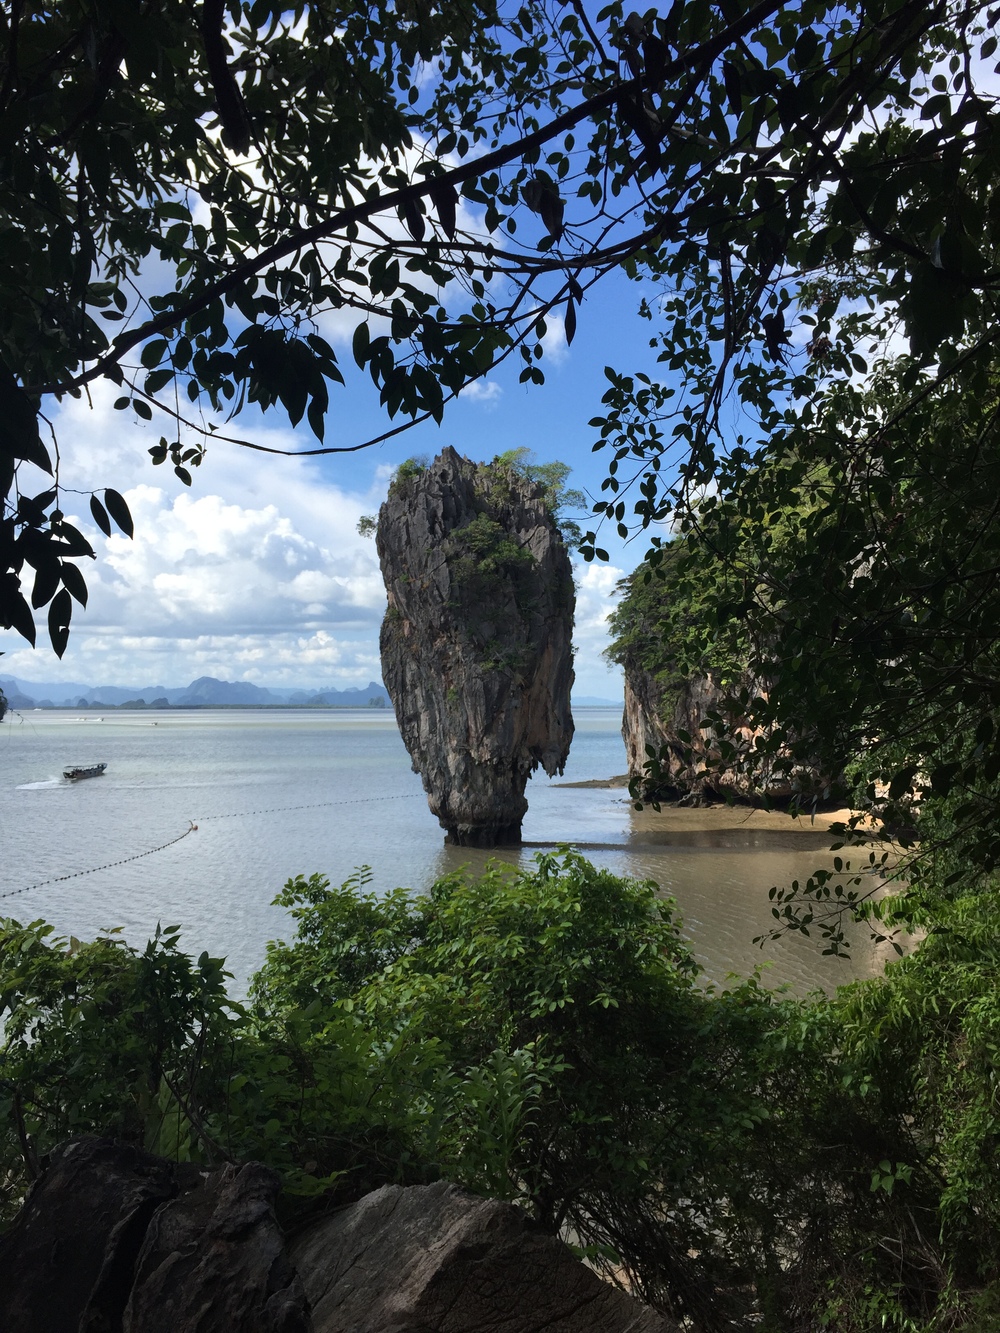  James Bond Island, Tailandia. Procurei um ponto diferente do qual estamos acostumados a ver em fotos.  